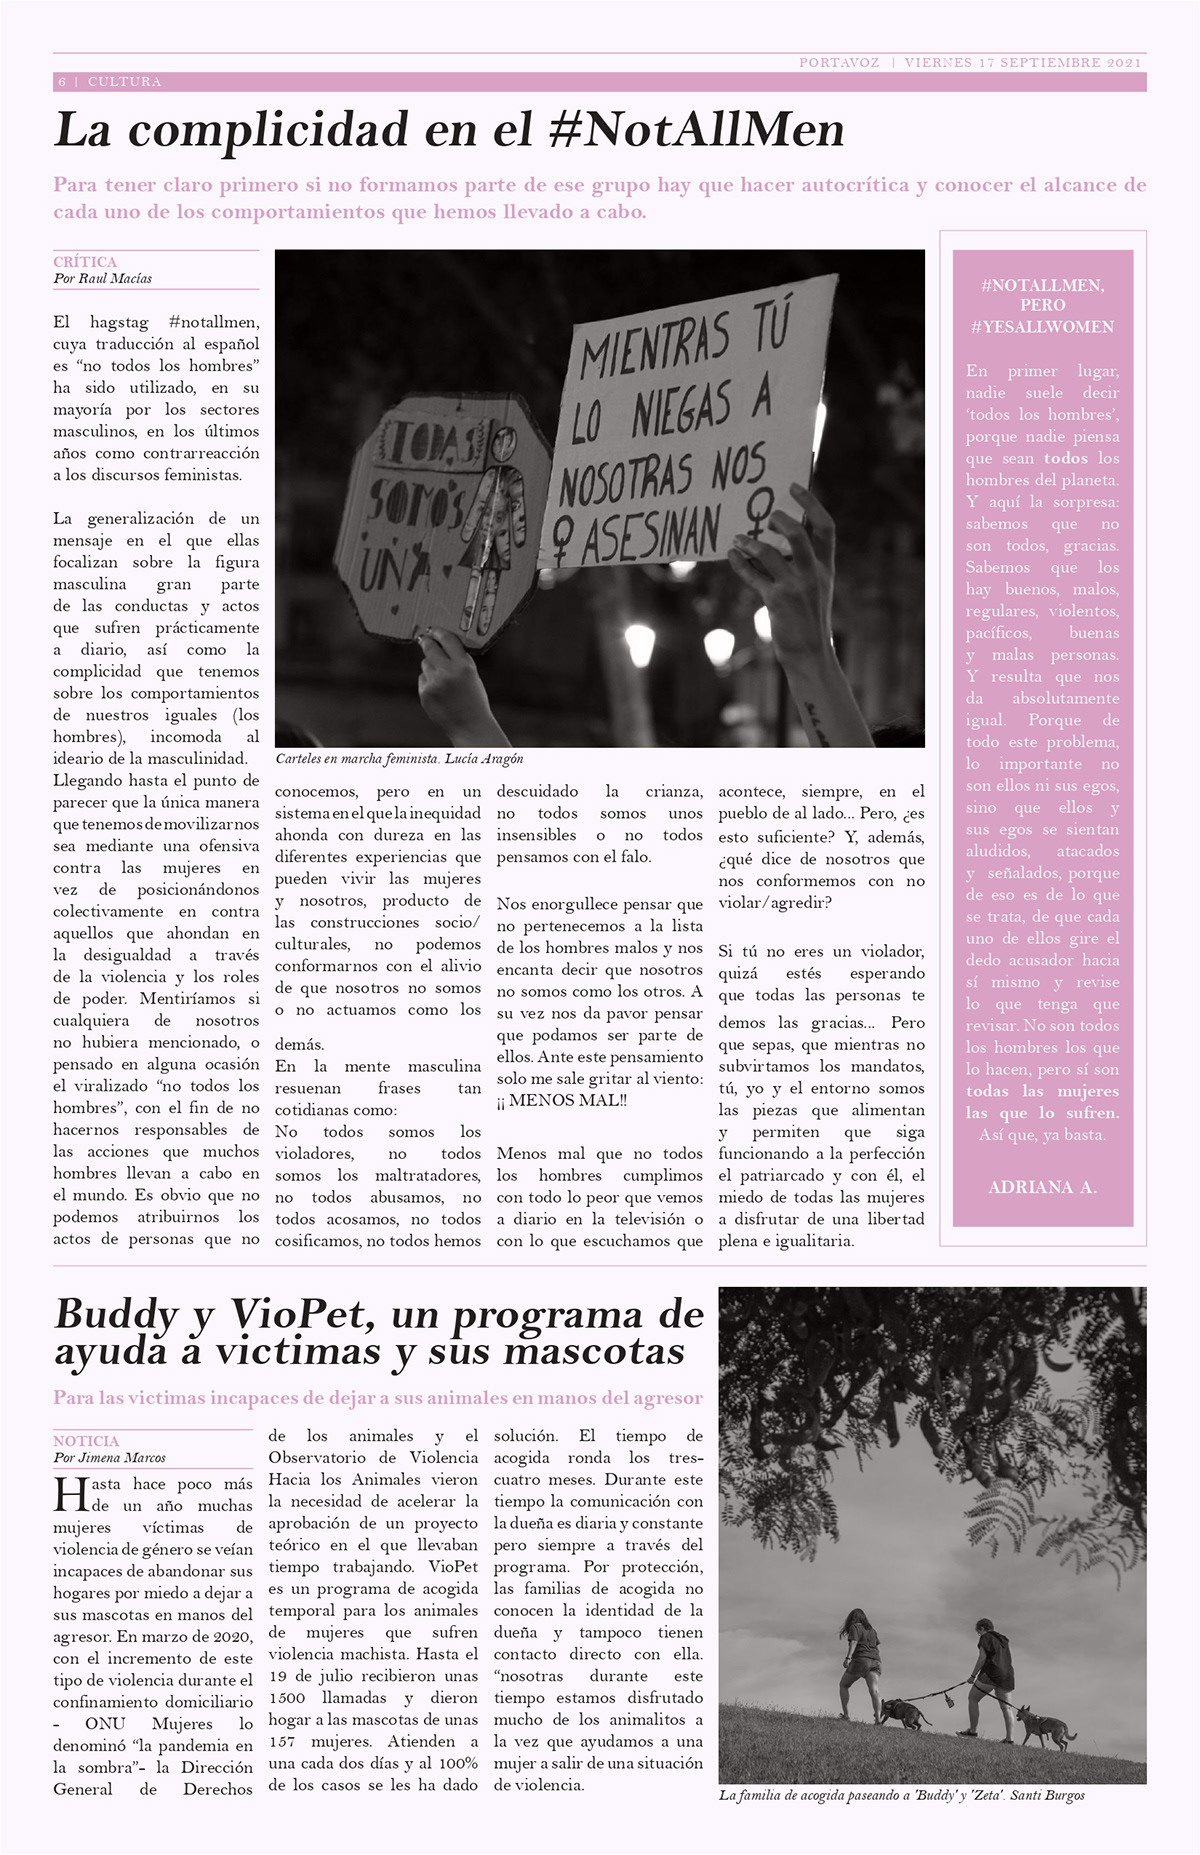 design diagramación editorial feminism mujer newspaper periodico violencia de genero